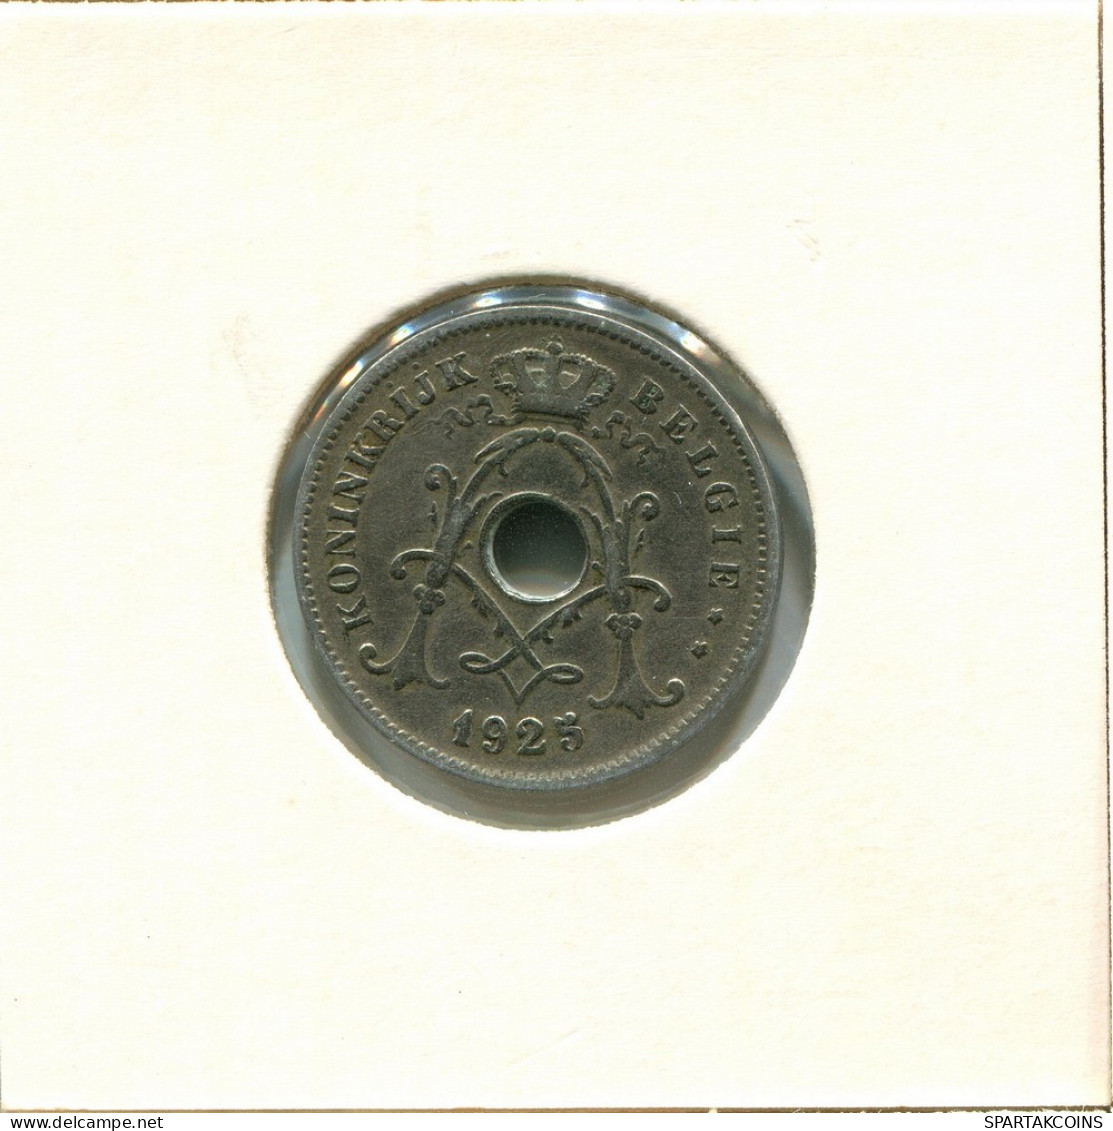 10 CENTIMES 1925 DUTCH Text BELGIUM Coin #BA288.U - 10 Centimes